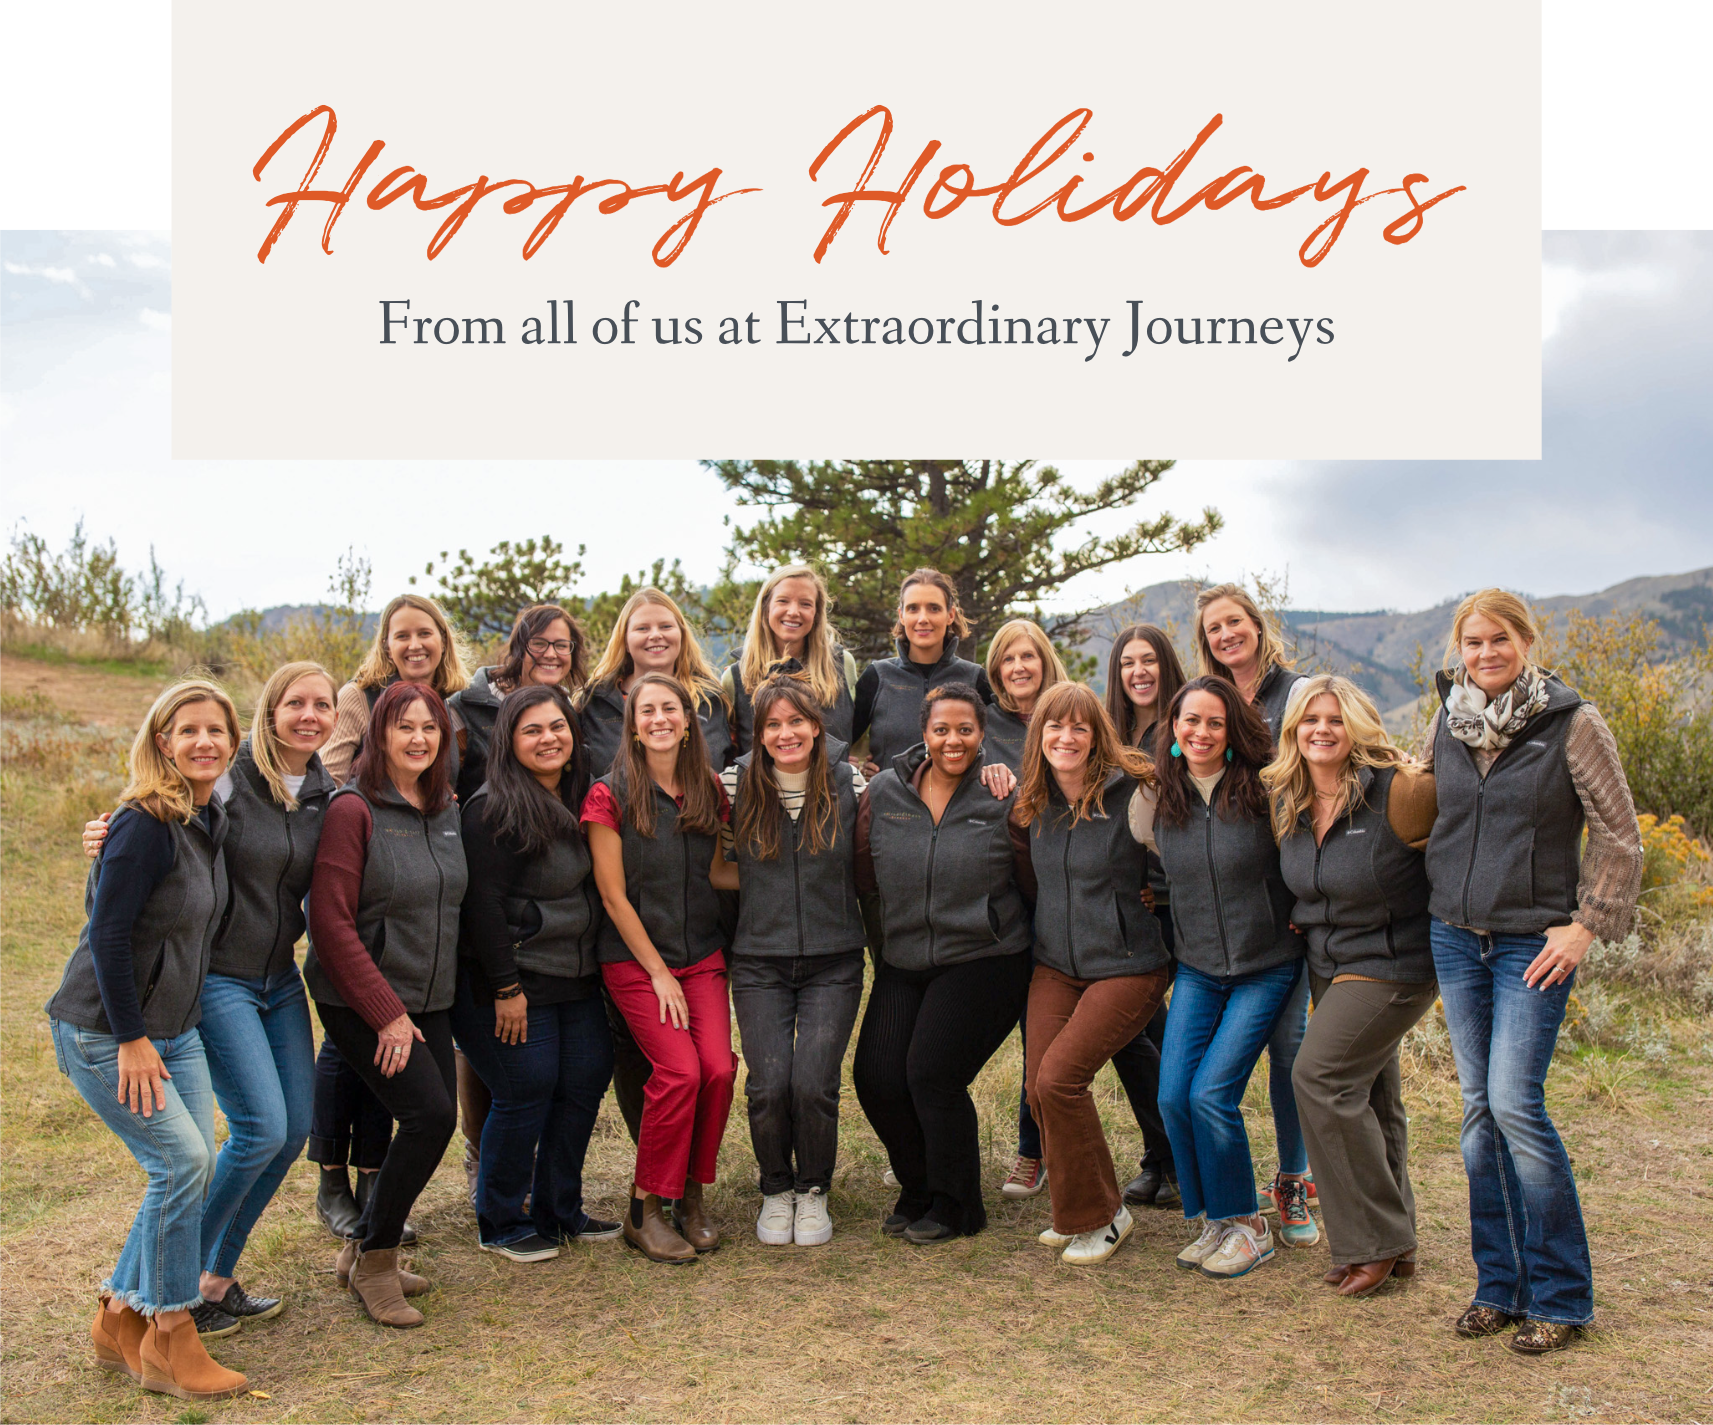 Happy Holidays from Extraordinary Journeys